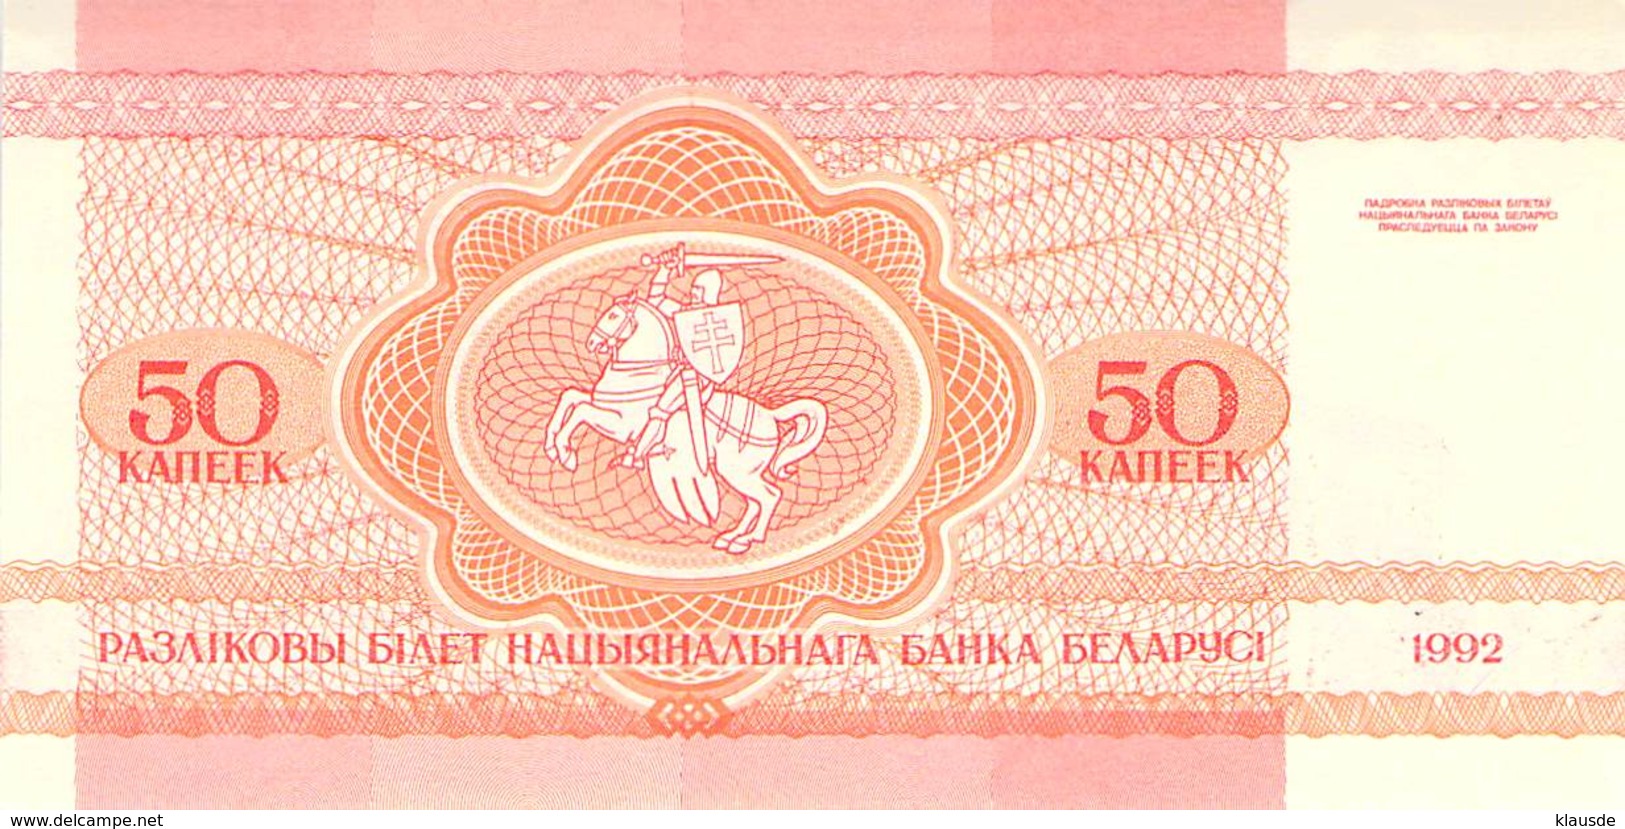 50 Kaneek (Rubel) Belaruss - Belarus